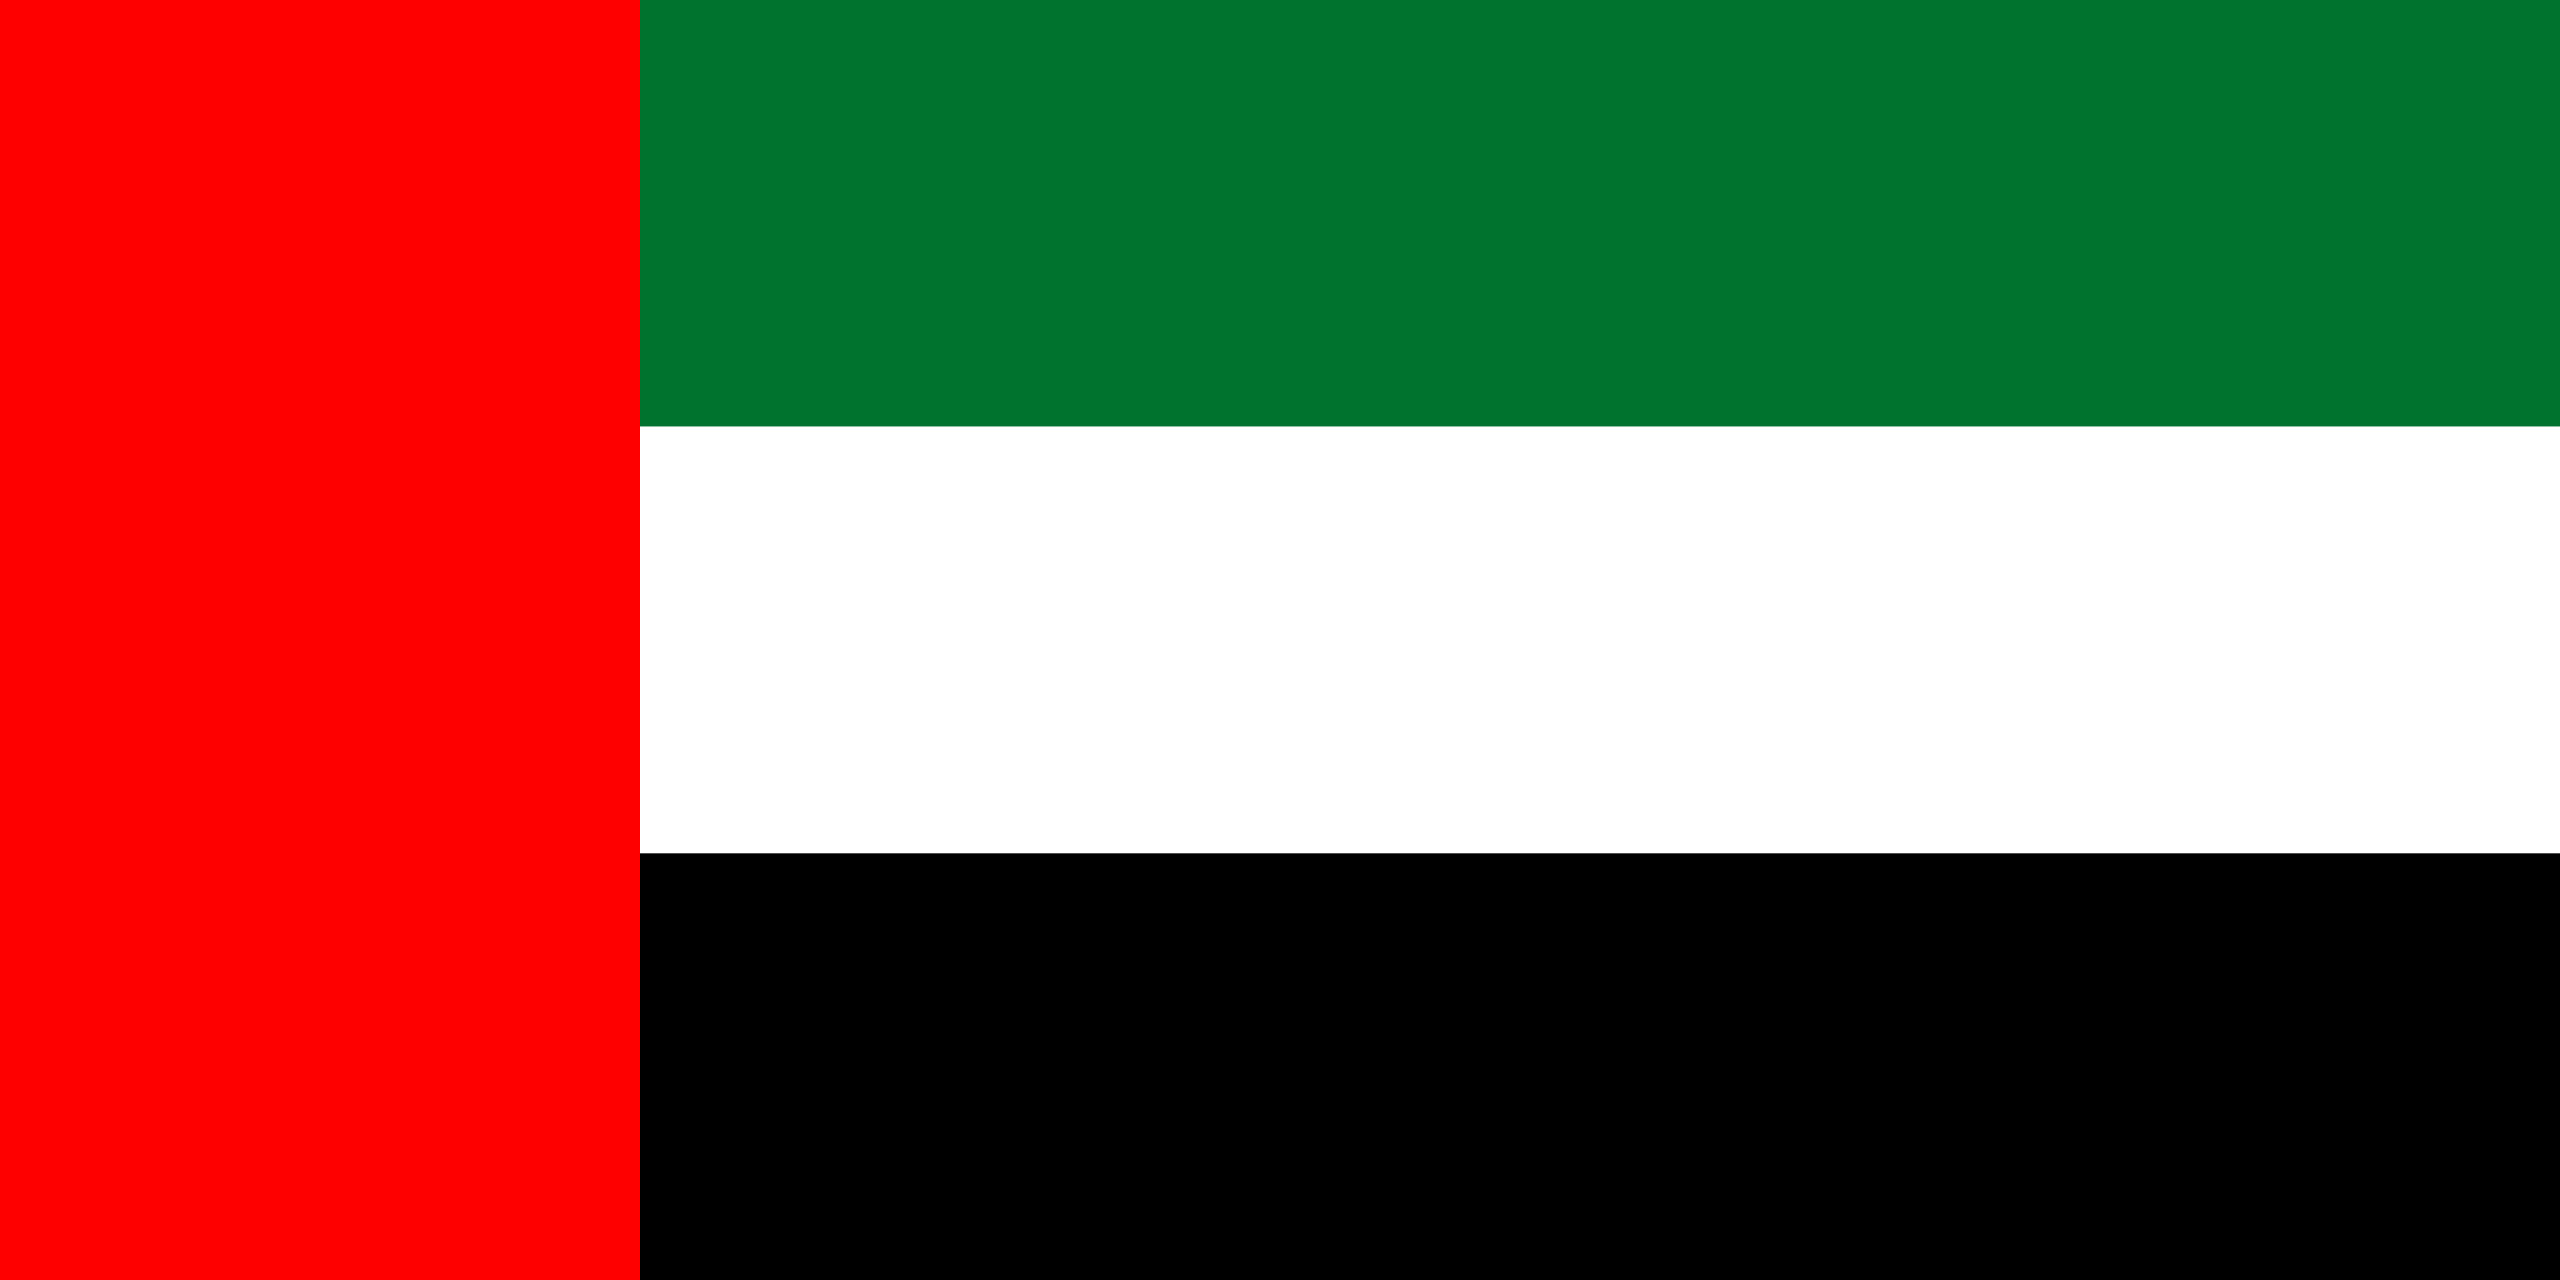 National Flag of the United Arab Emirates